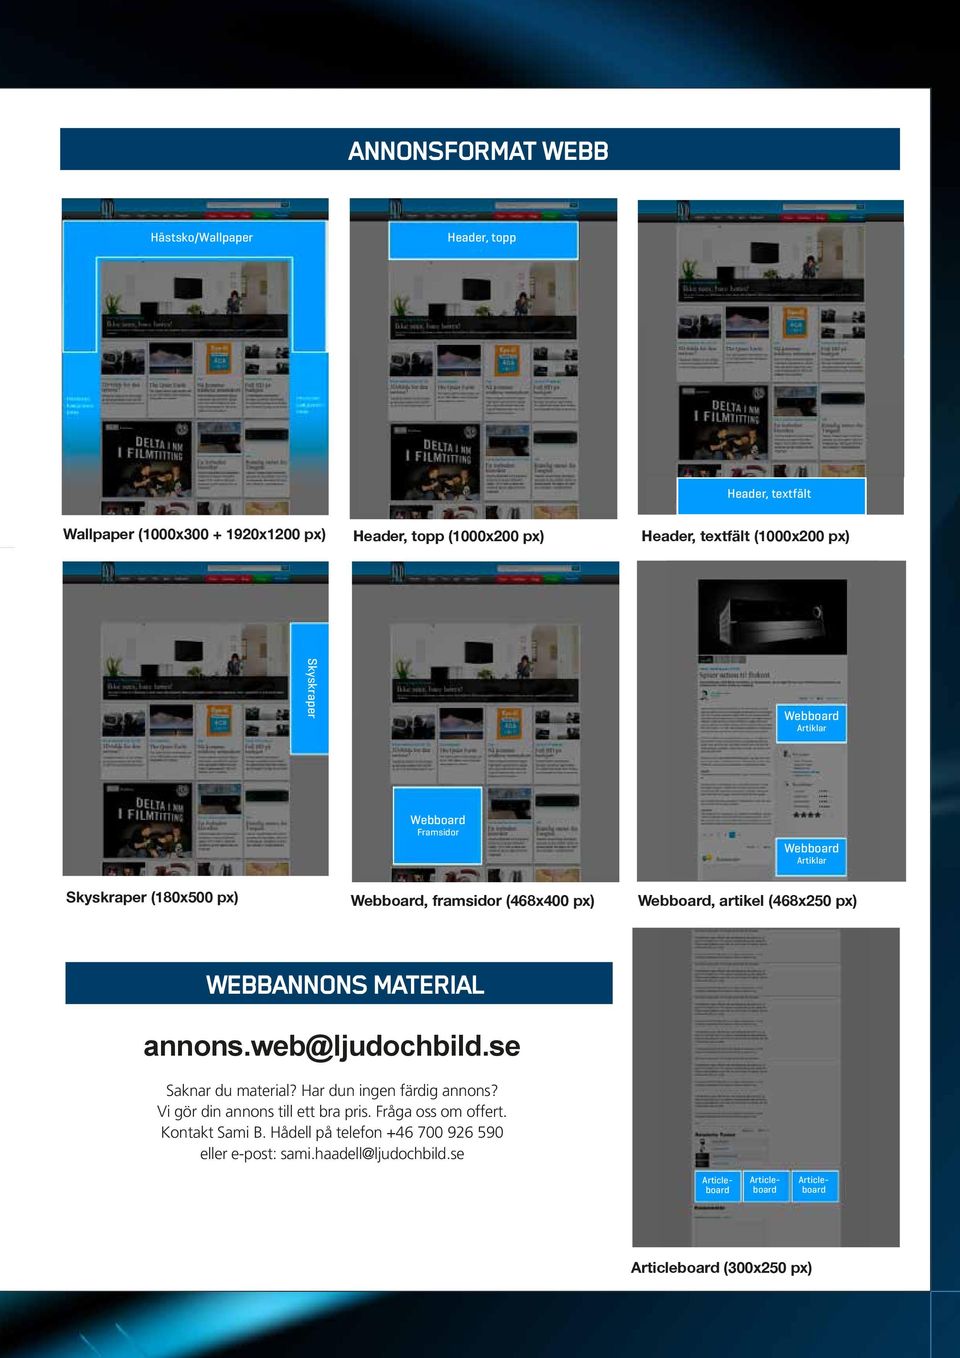 px) WEBBANNONS MATERIAL annons.web@ljudochbild.se Saknar du material? Har dun ingen färdig annons? Vi gör din annons till ett bra pris. Fråga oss om offert.